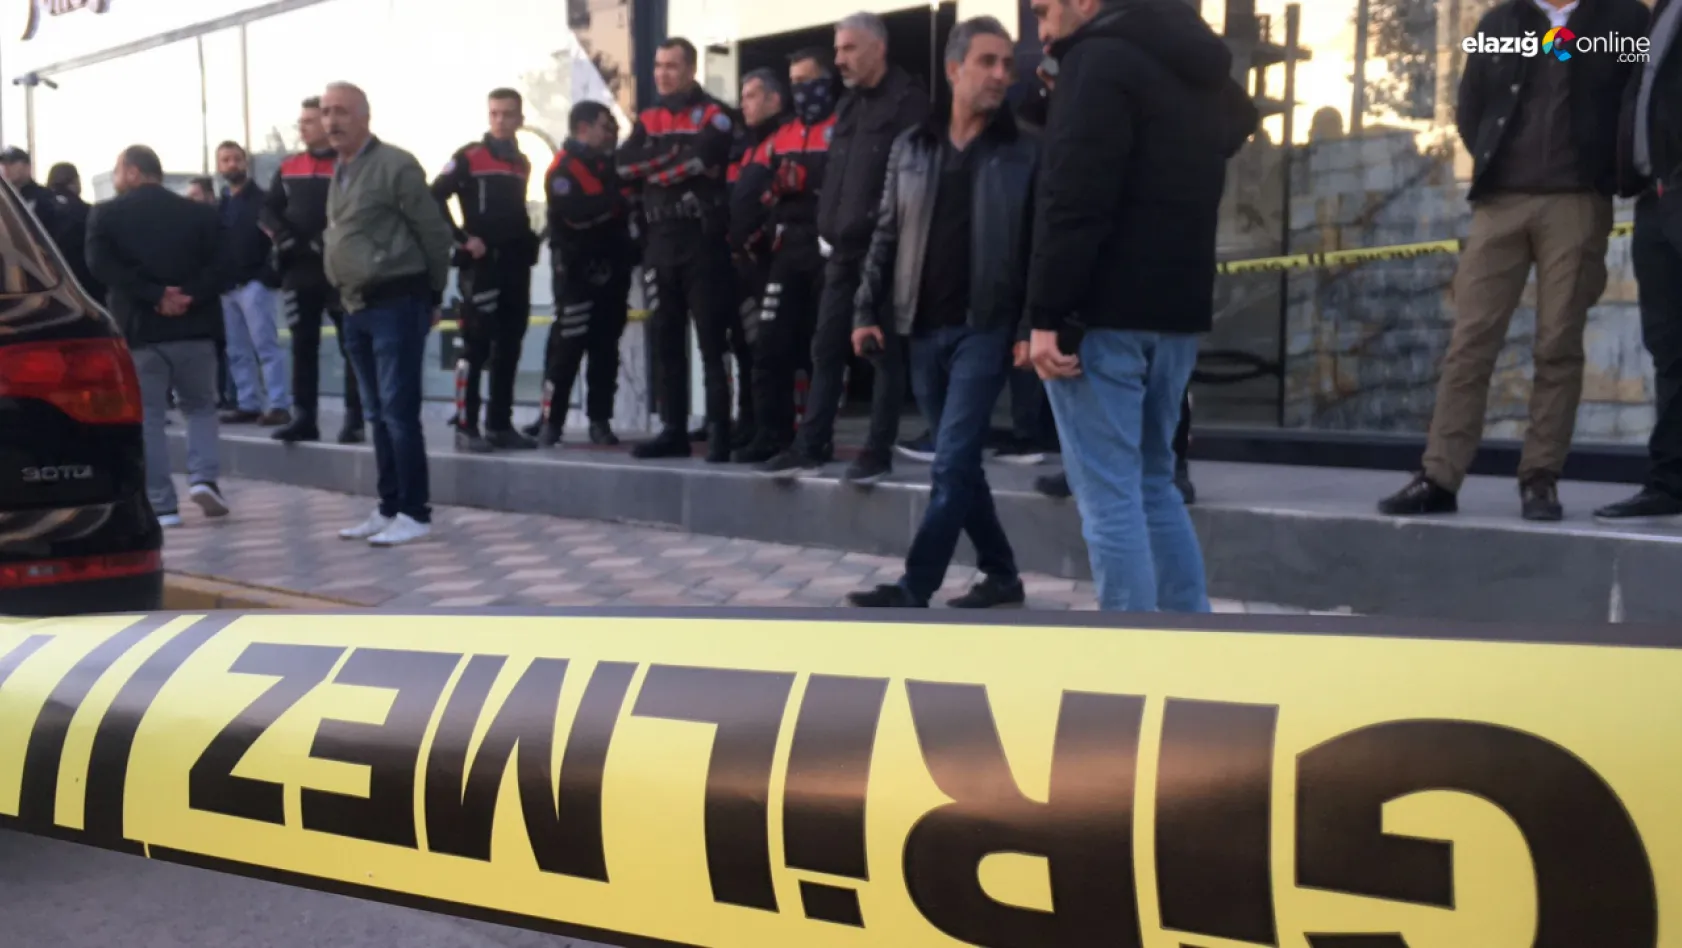 Elazığ'da silahlı kavga! 3 kişi hayatını kaybetti